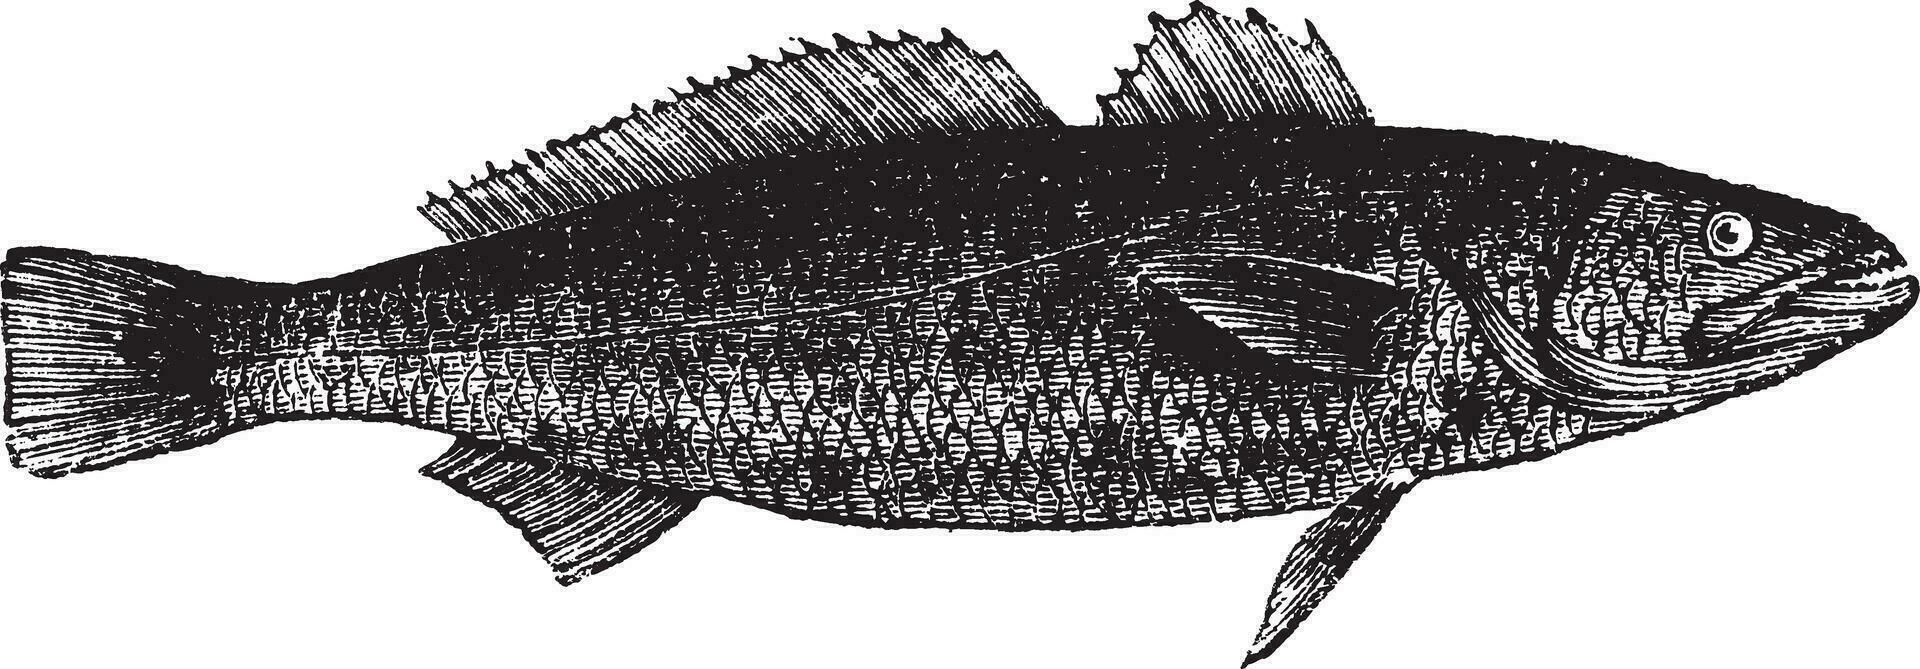 otolitos ruber o Tigre dentado corvina pez, Clásico grabado vector